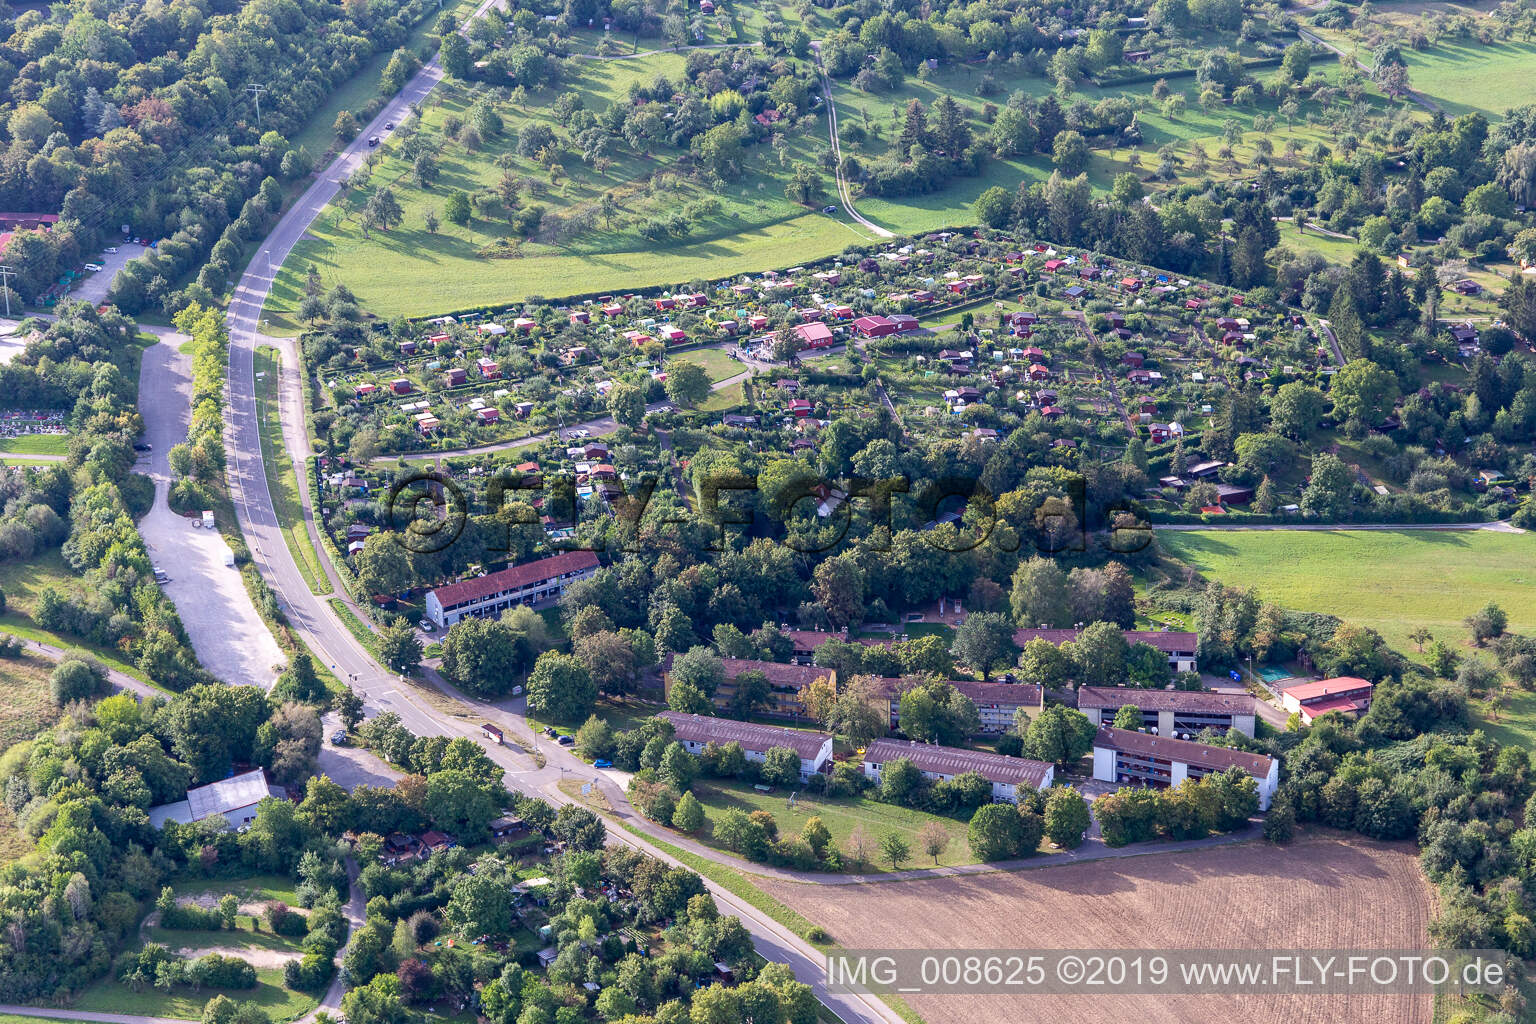 Vue aérienne de Jardins familiaux Wackersbronn à Reutlingen dans le département Bade-Wurtemberg, Allemagne